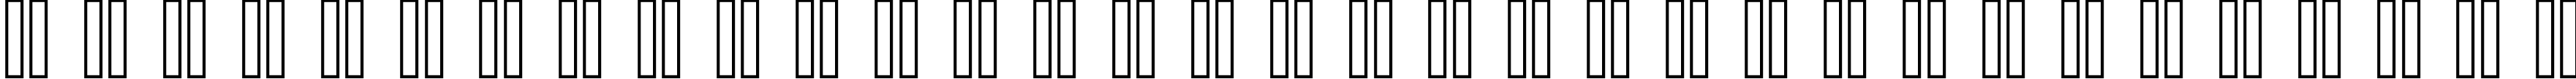 Пример написания русского алфавита шрифтом classic 10_66